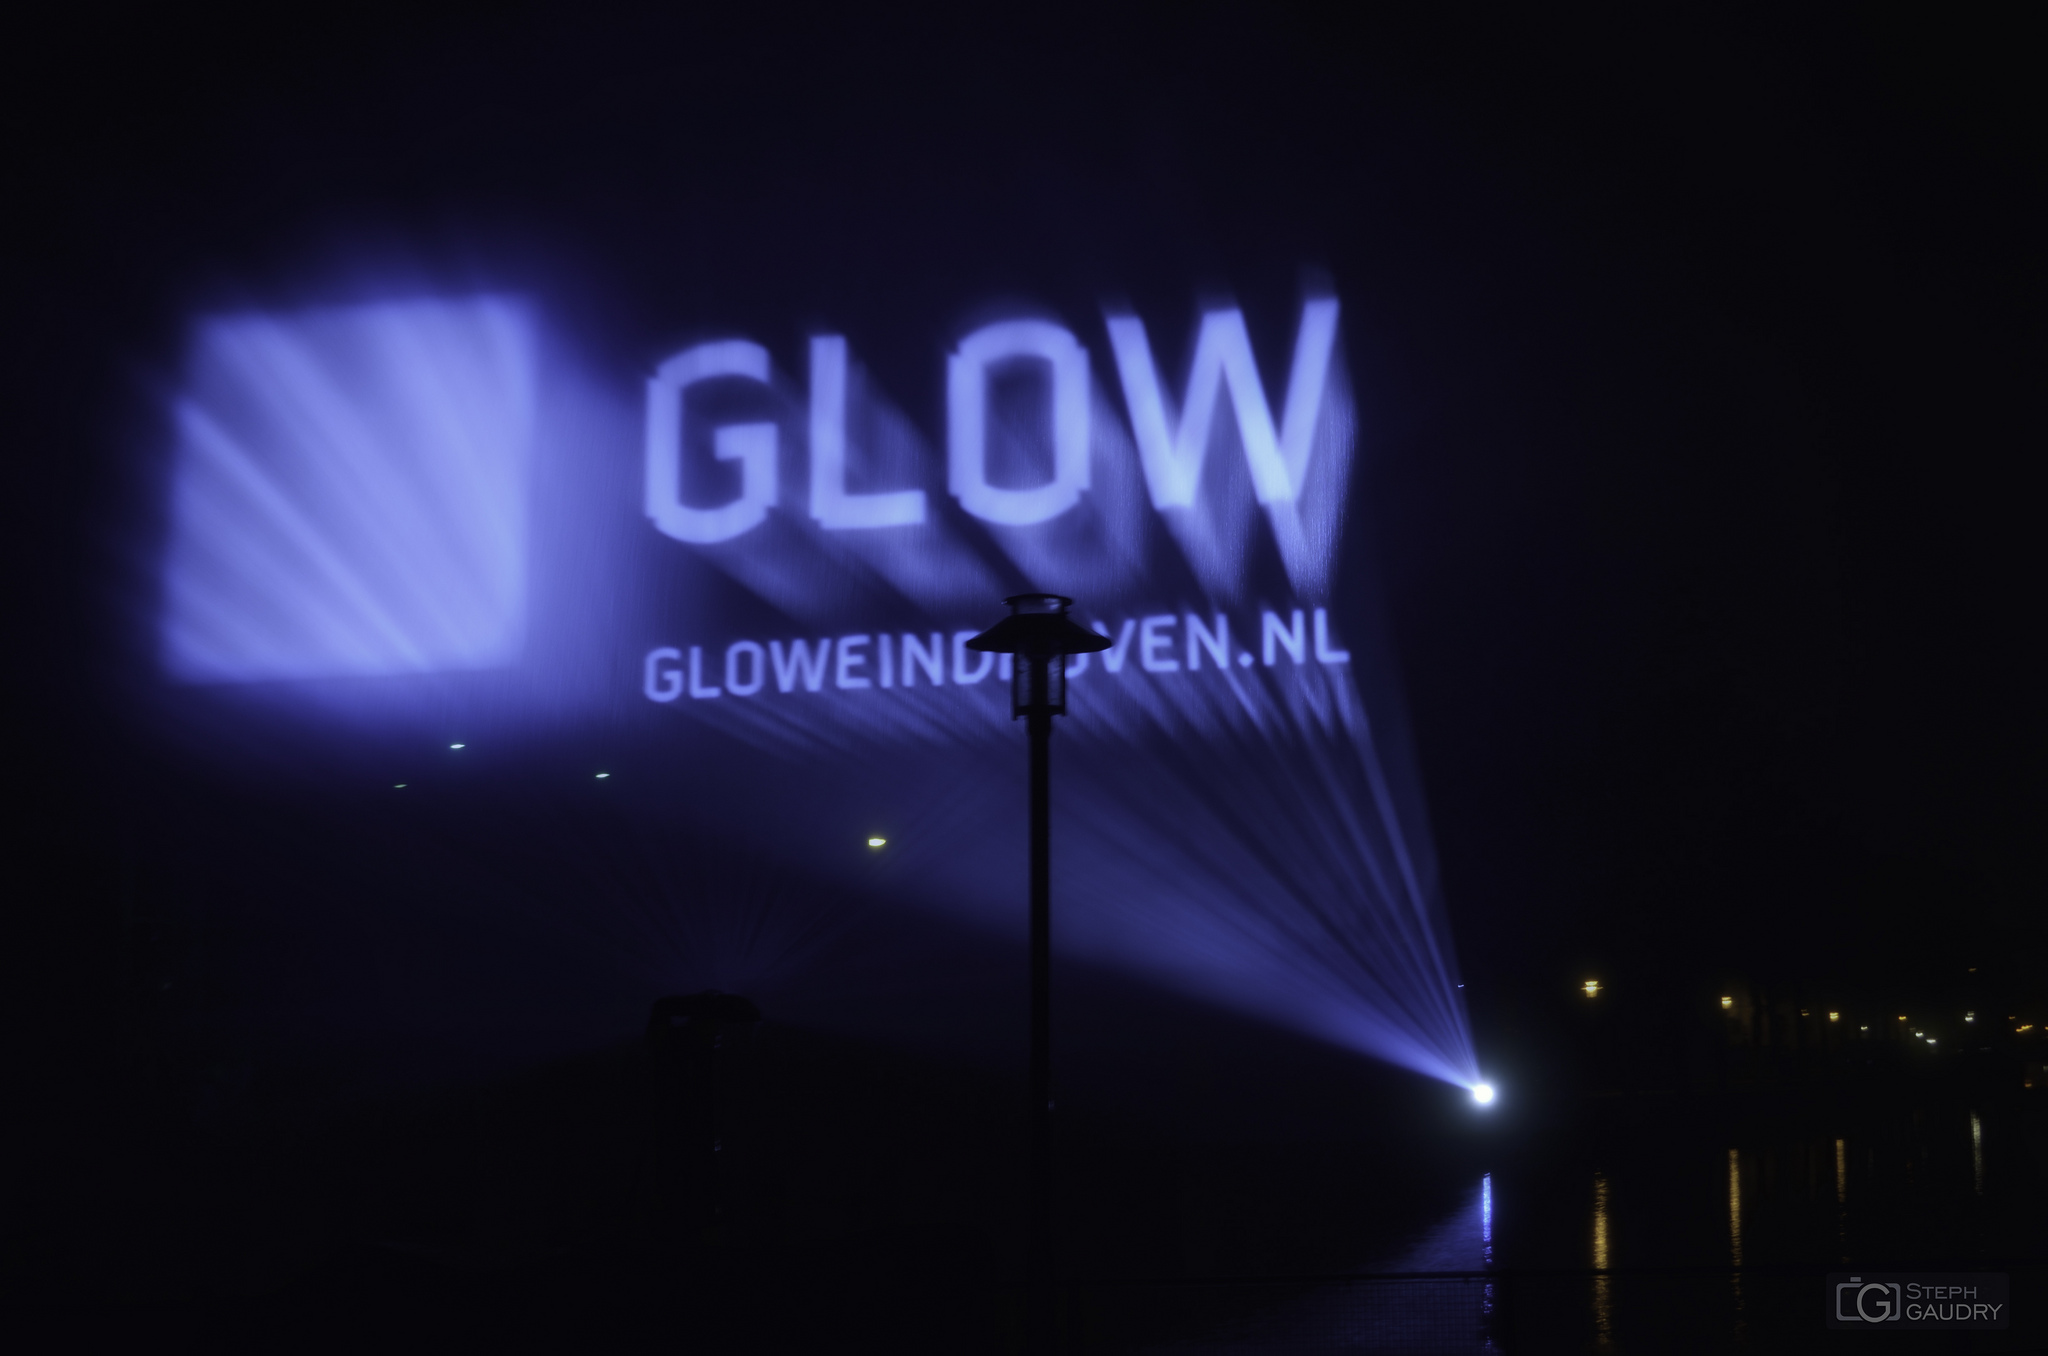 Eindhoven glow 2013 - Laser [Klicken Sie hier, um die Diashow zu starten]